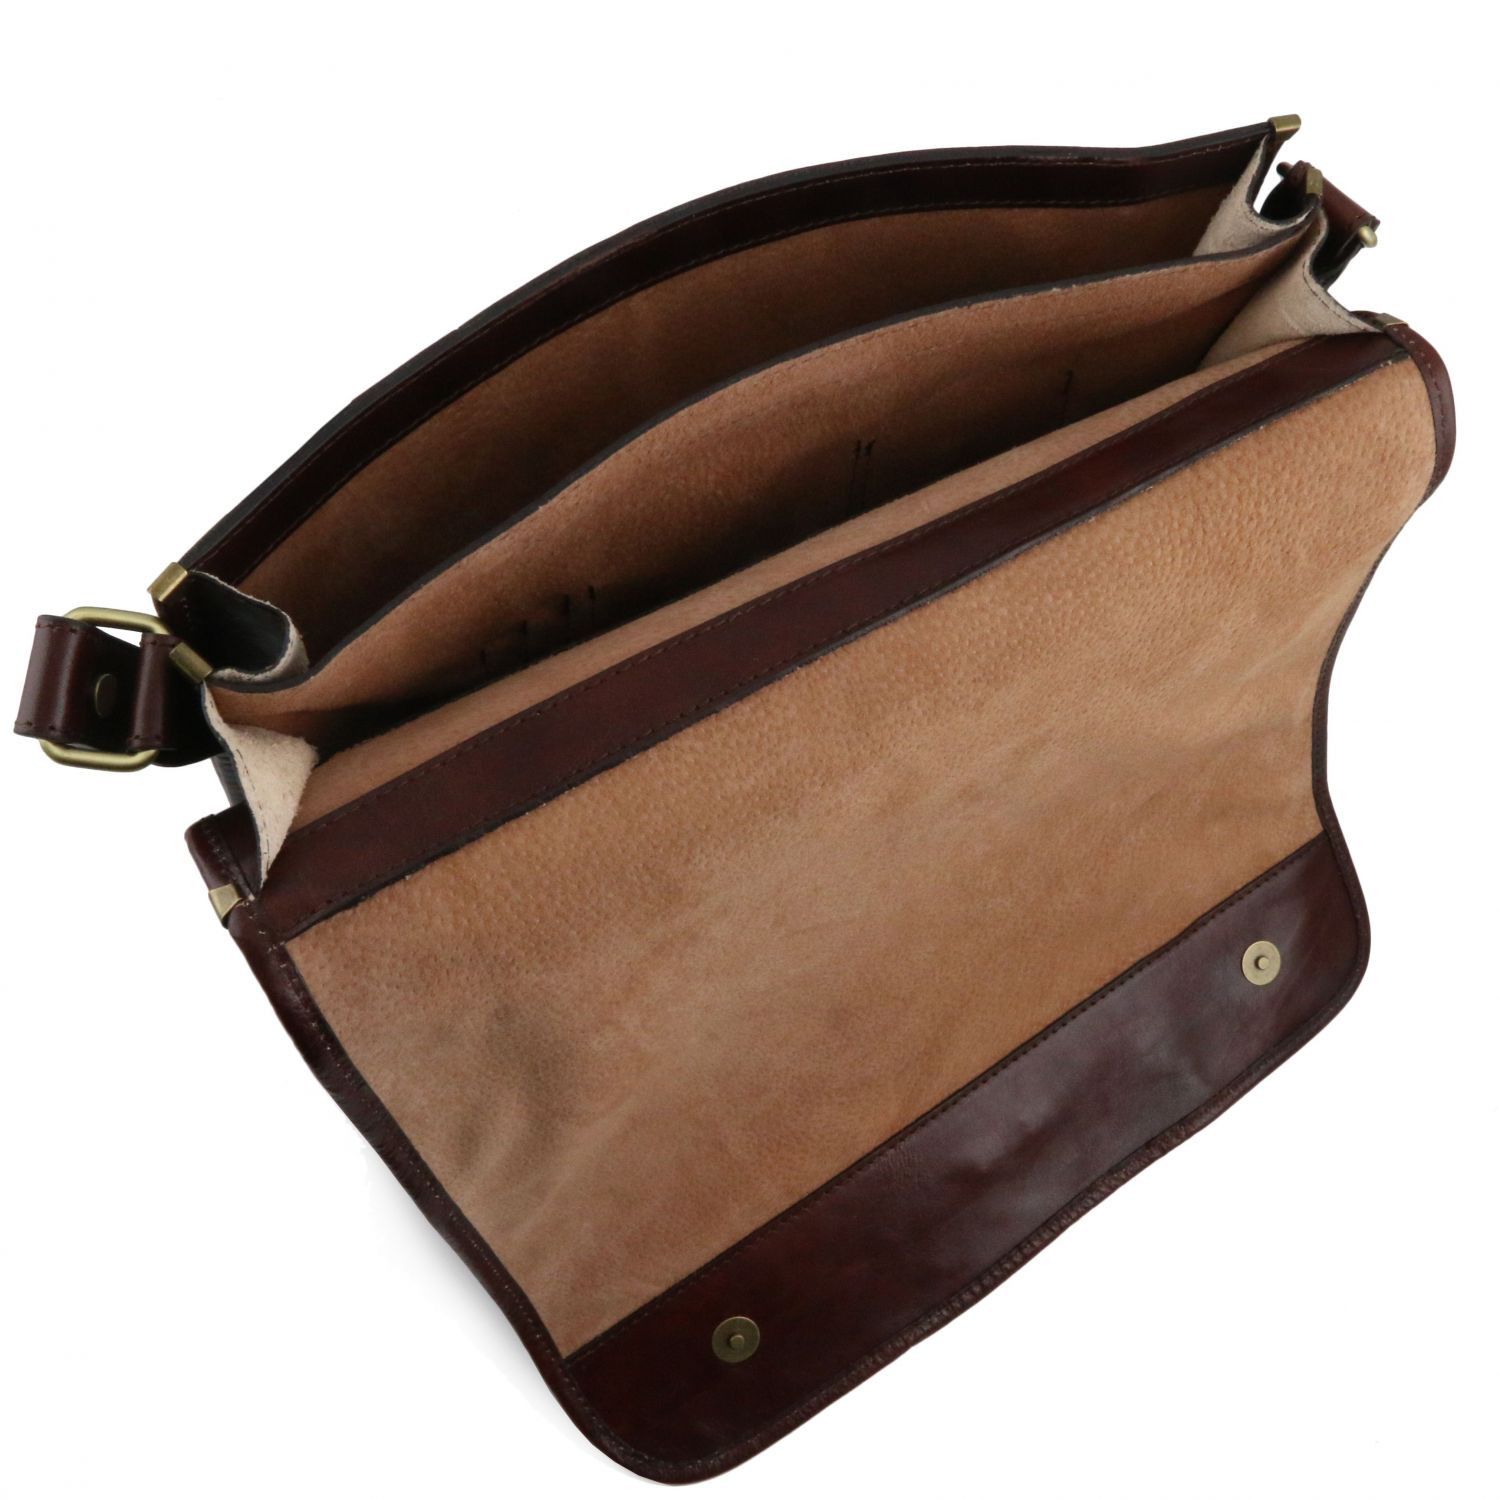 Leather Messenger Shoulder Bag - Mr. Messenger - Domini Leather